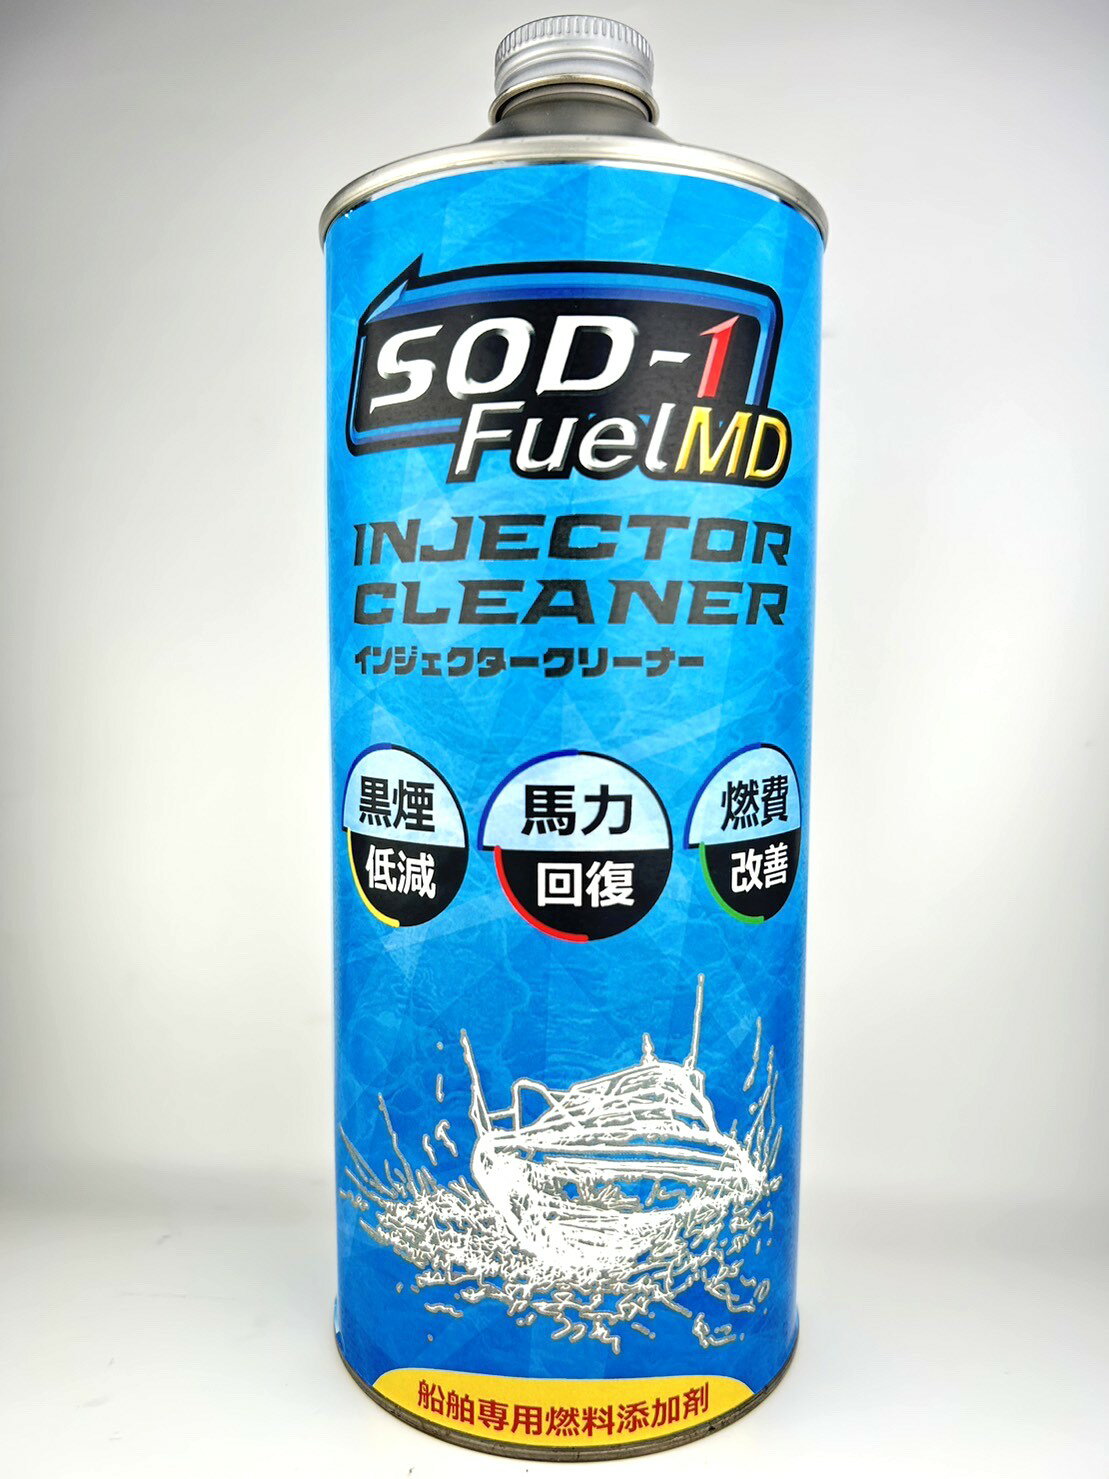 船舶専用燃料添加剤　SOD-1 FuelMD